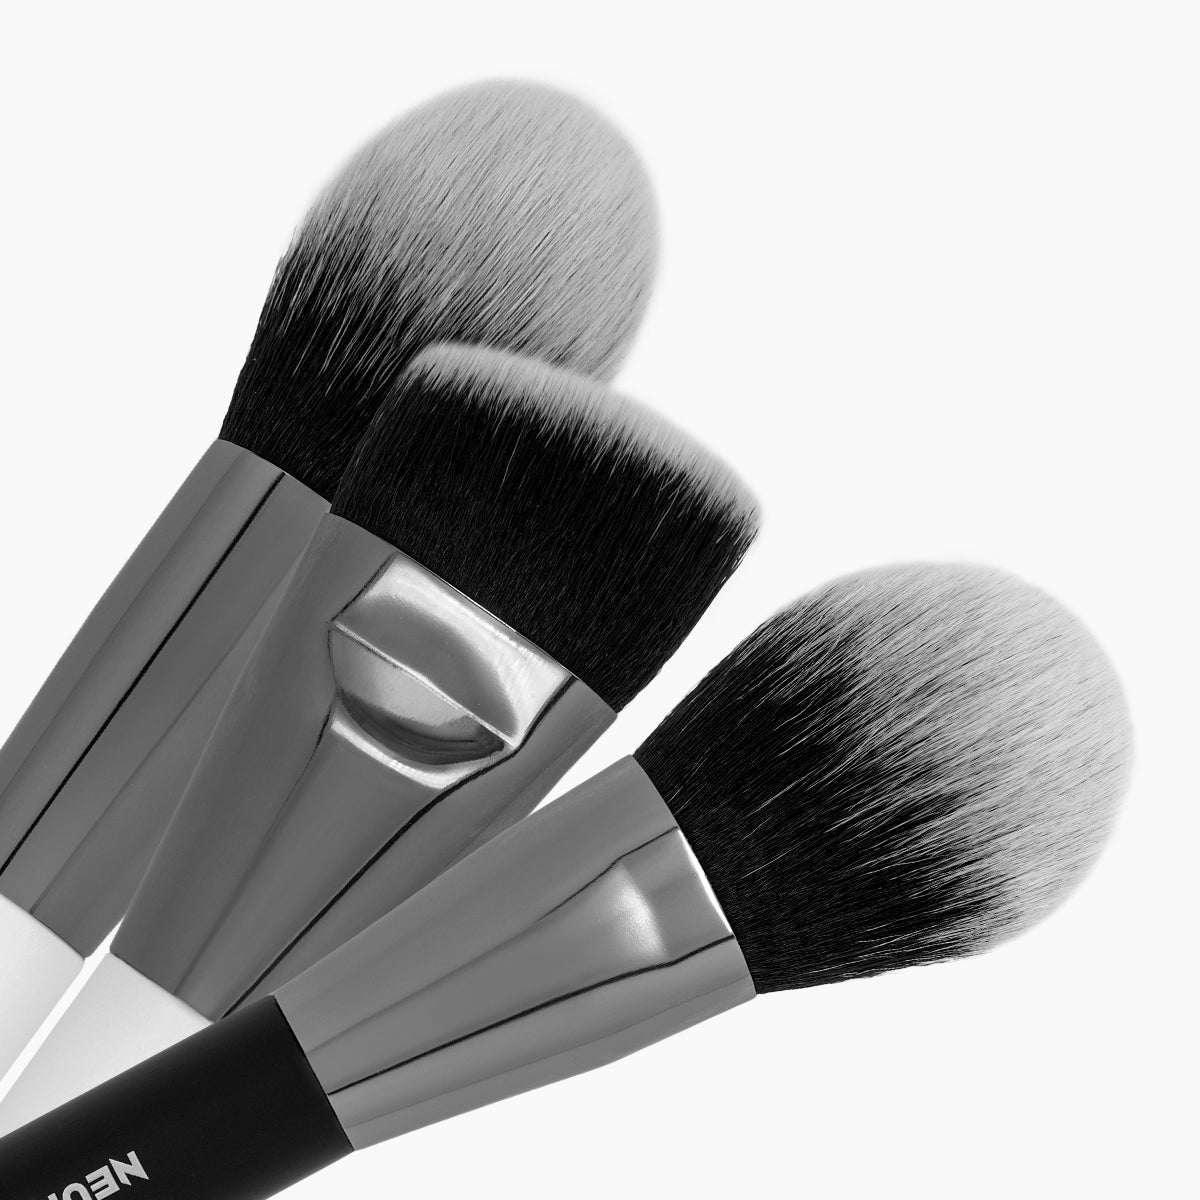 Panda Professional Makeup Brush Set 31-Pack